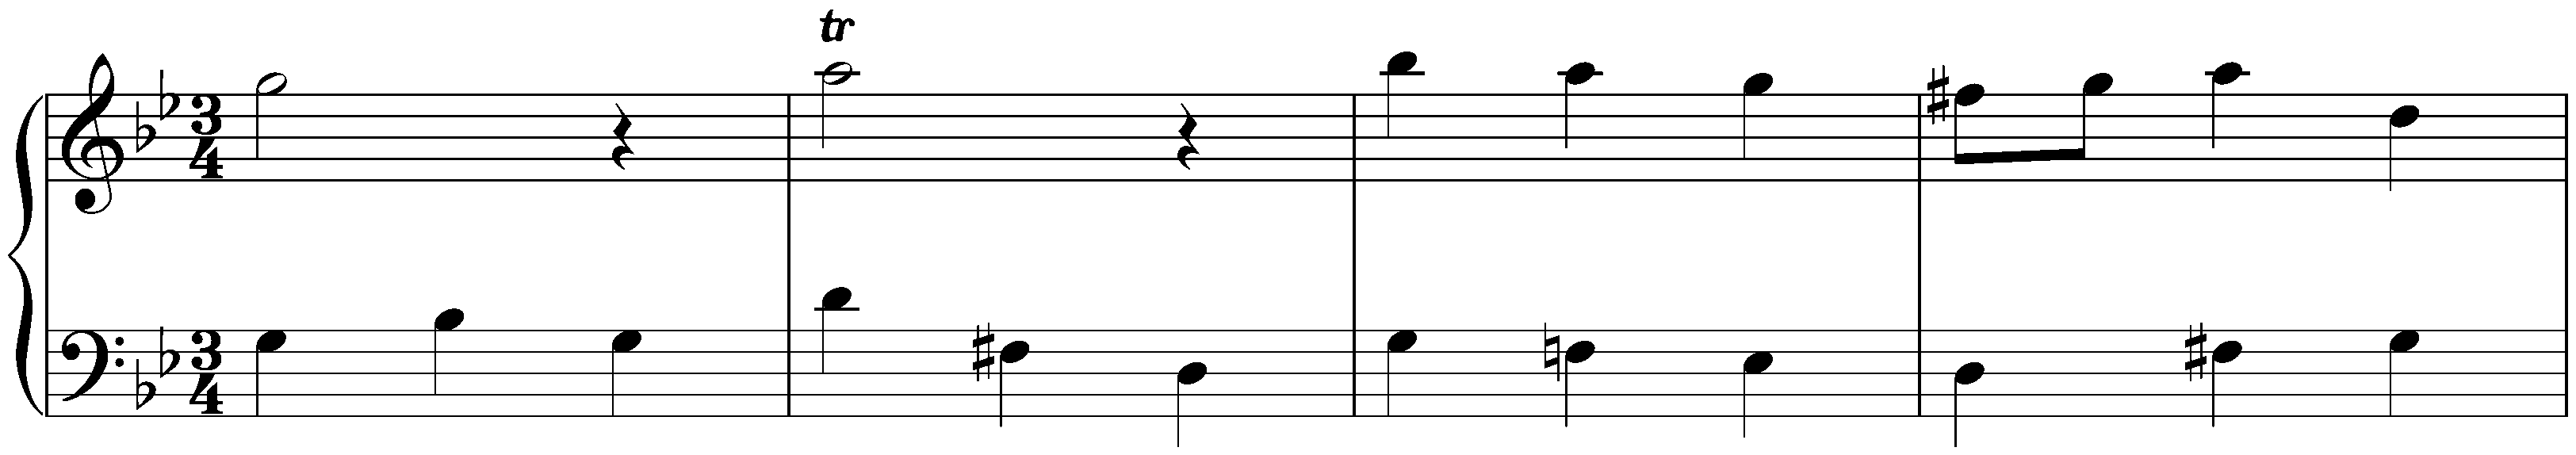 Menuet in G minor, HWV 534a